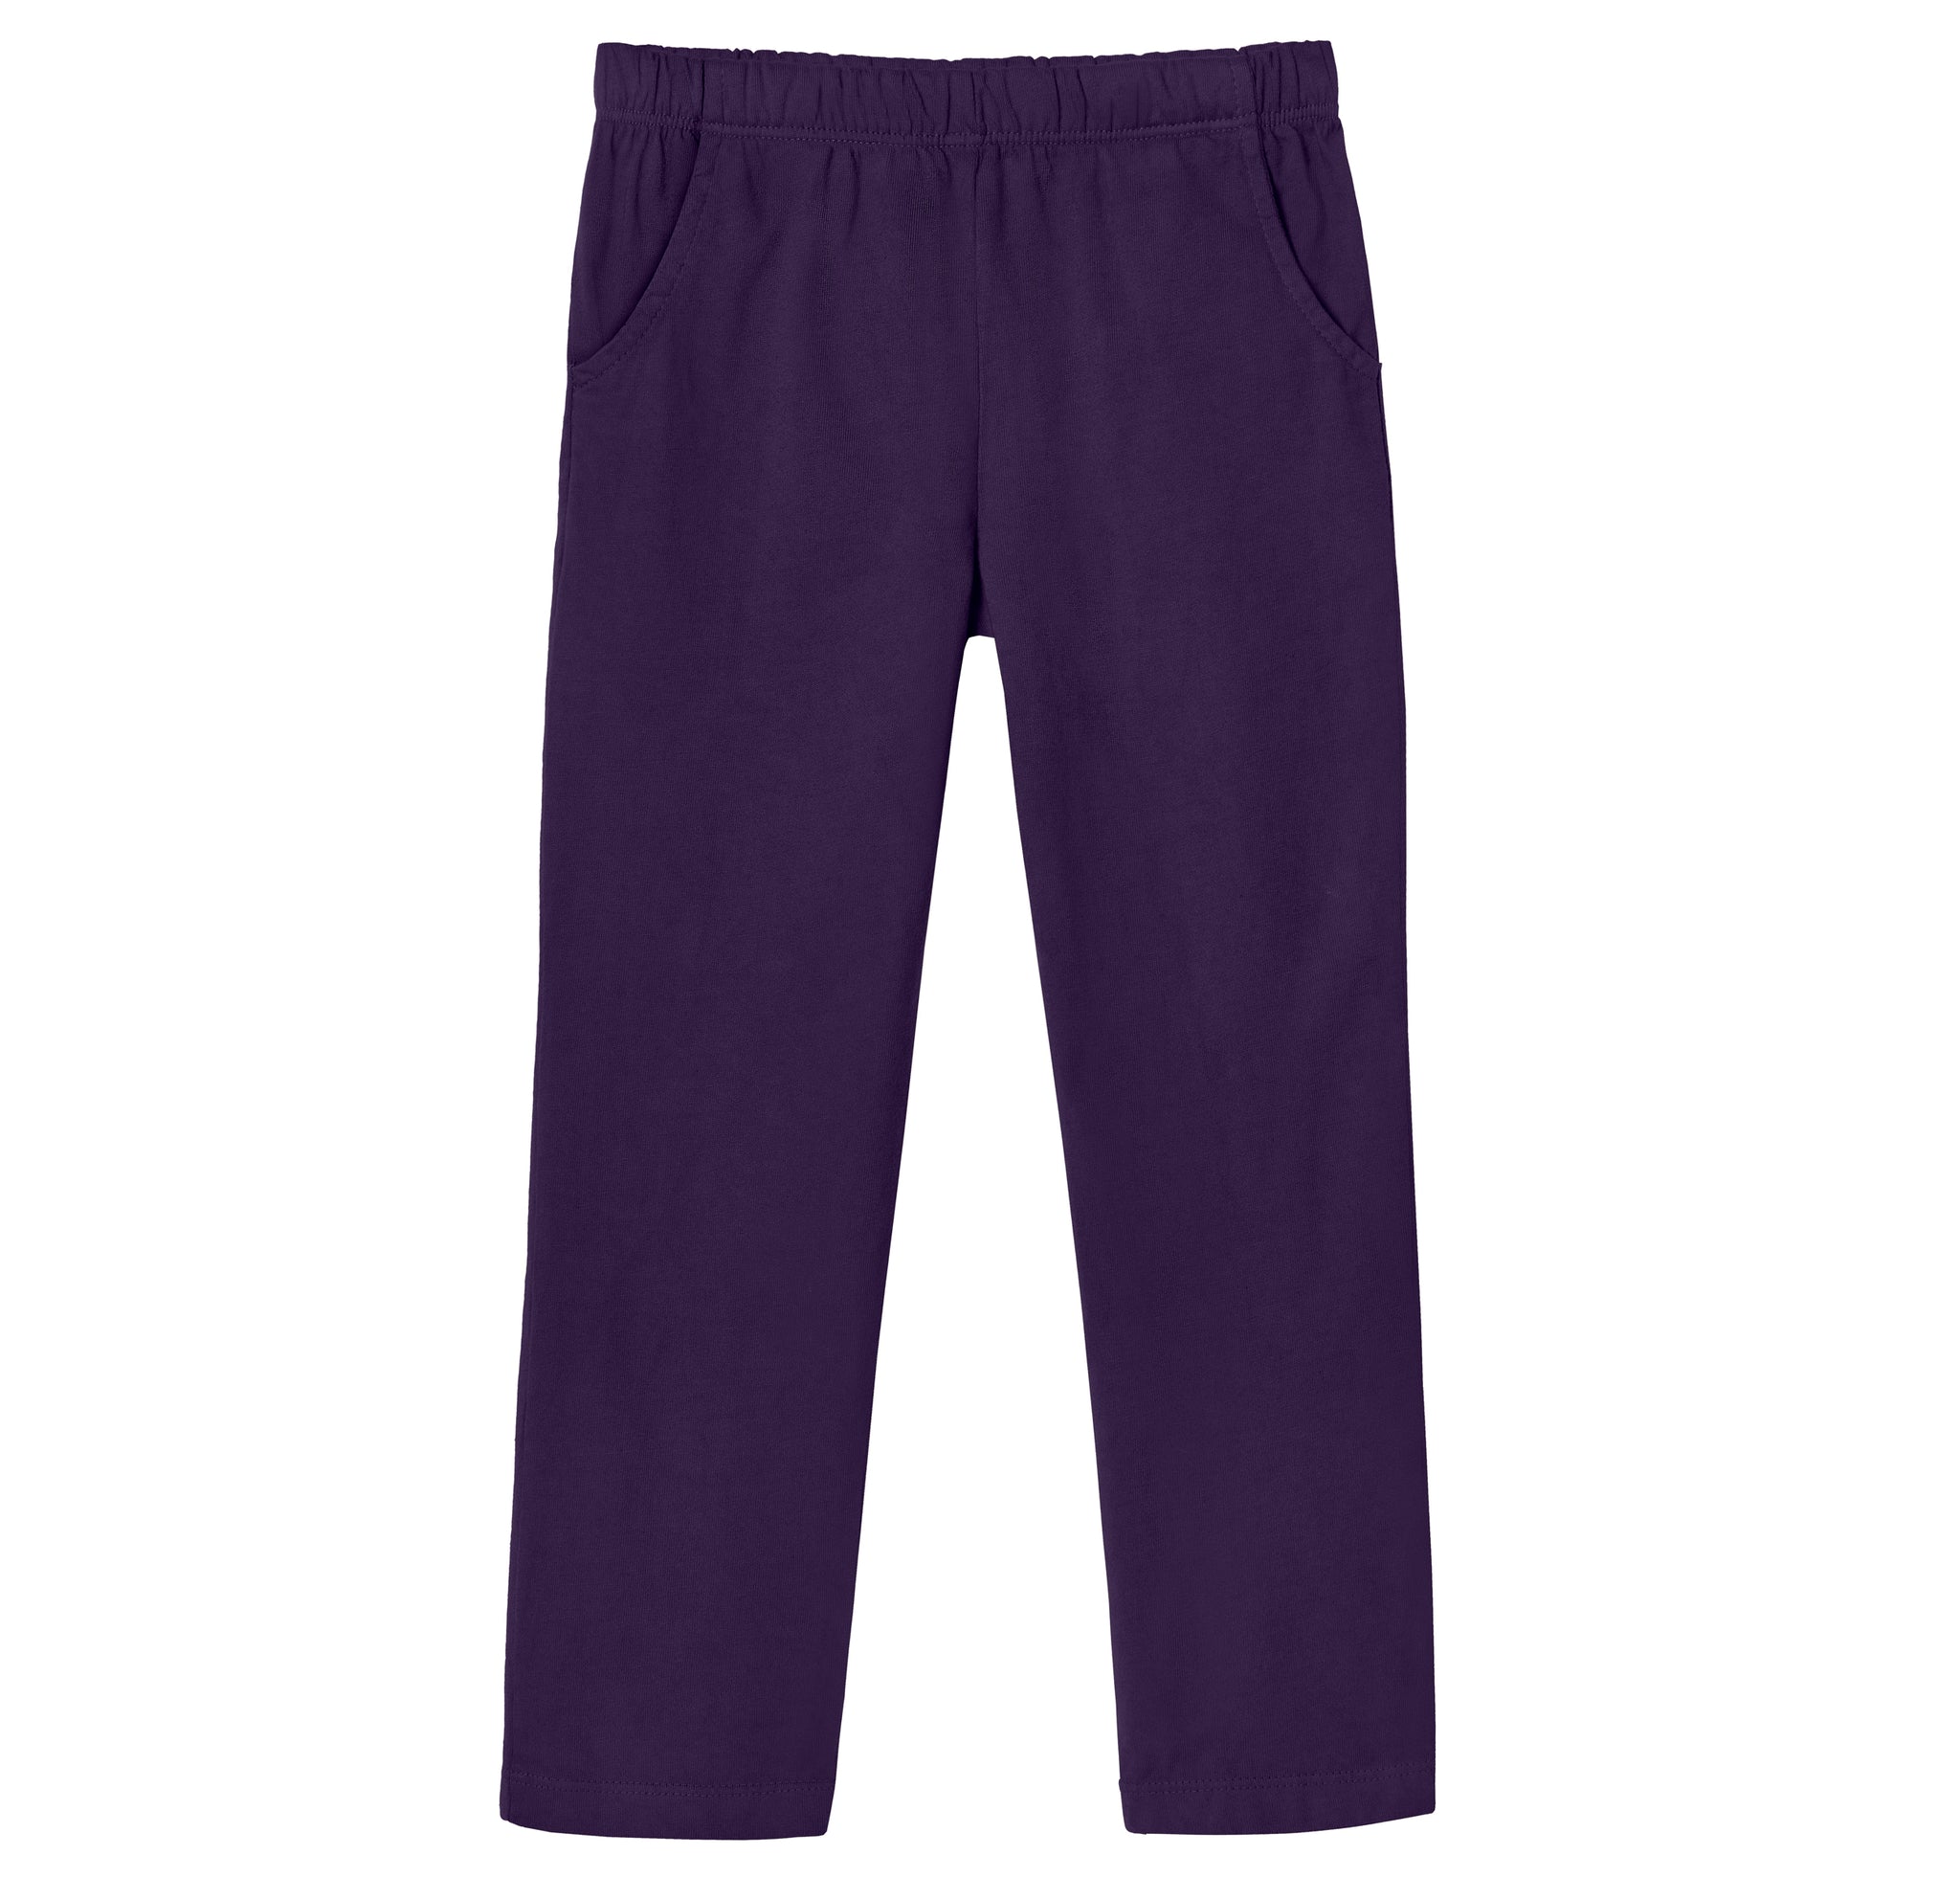 Girls Soft Cotton UPF 50+ Jersey Pocket Pants